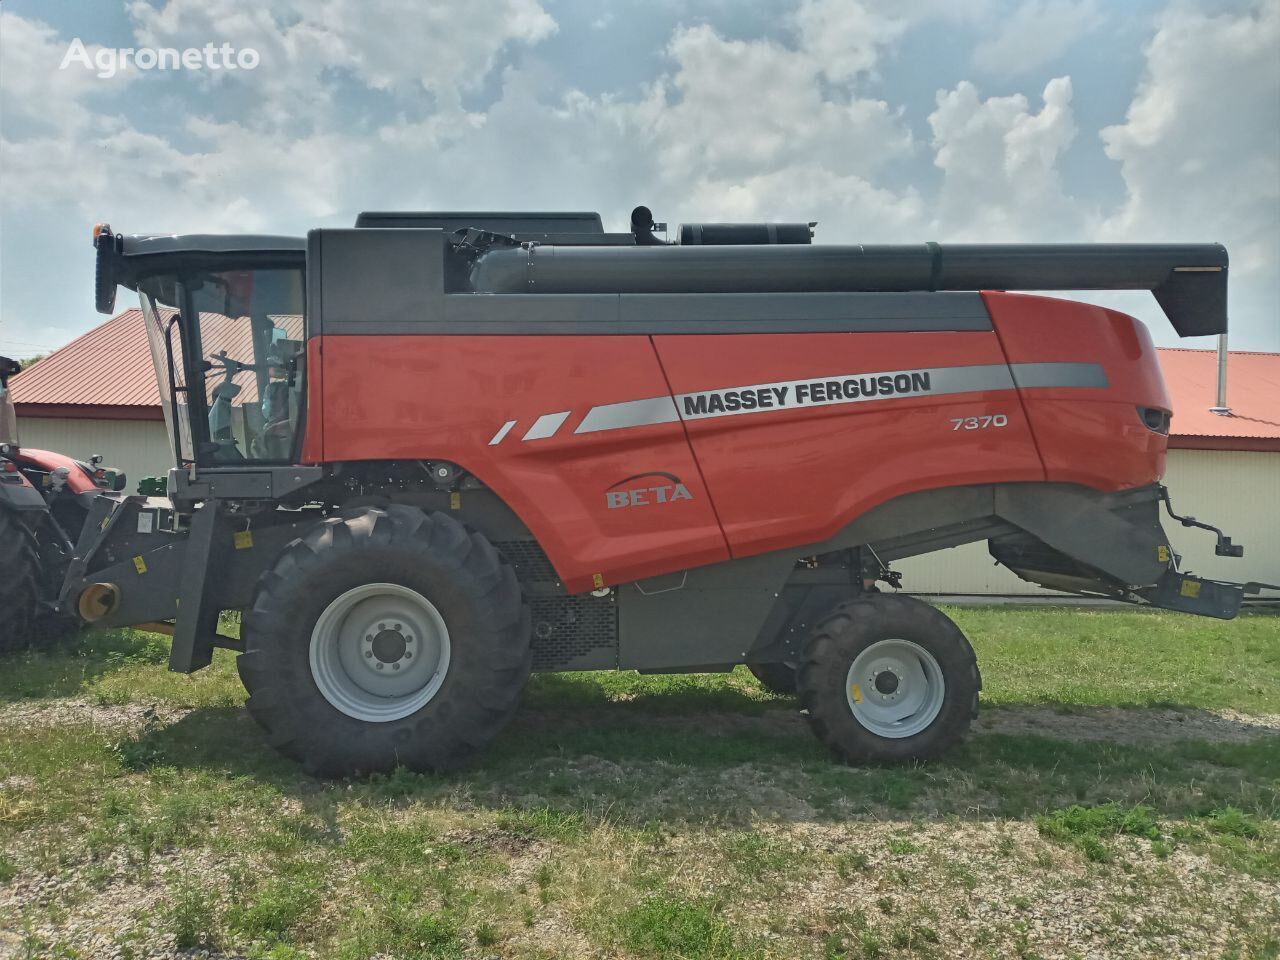 new Massey Ferguson Beta 7370 (v naiavnosti v Ukraini) grain harvester